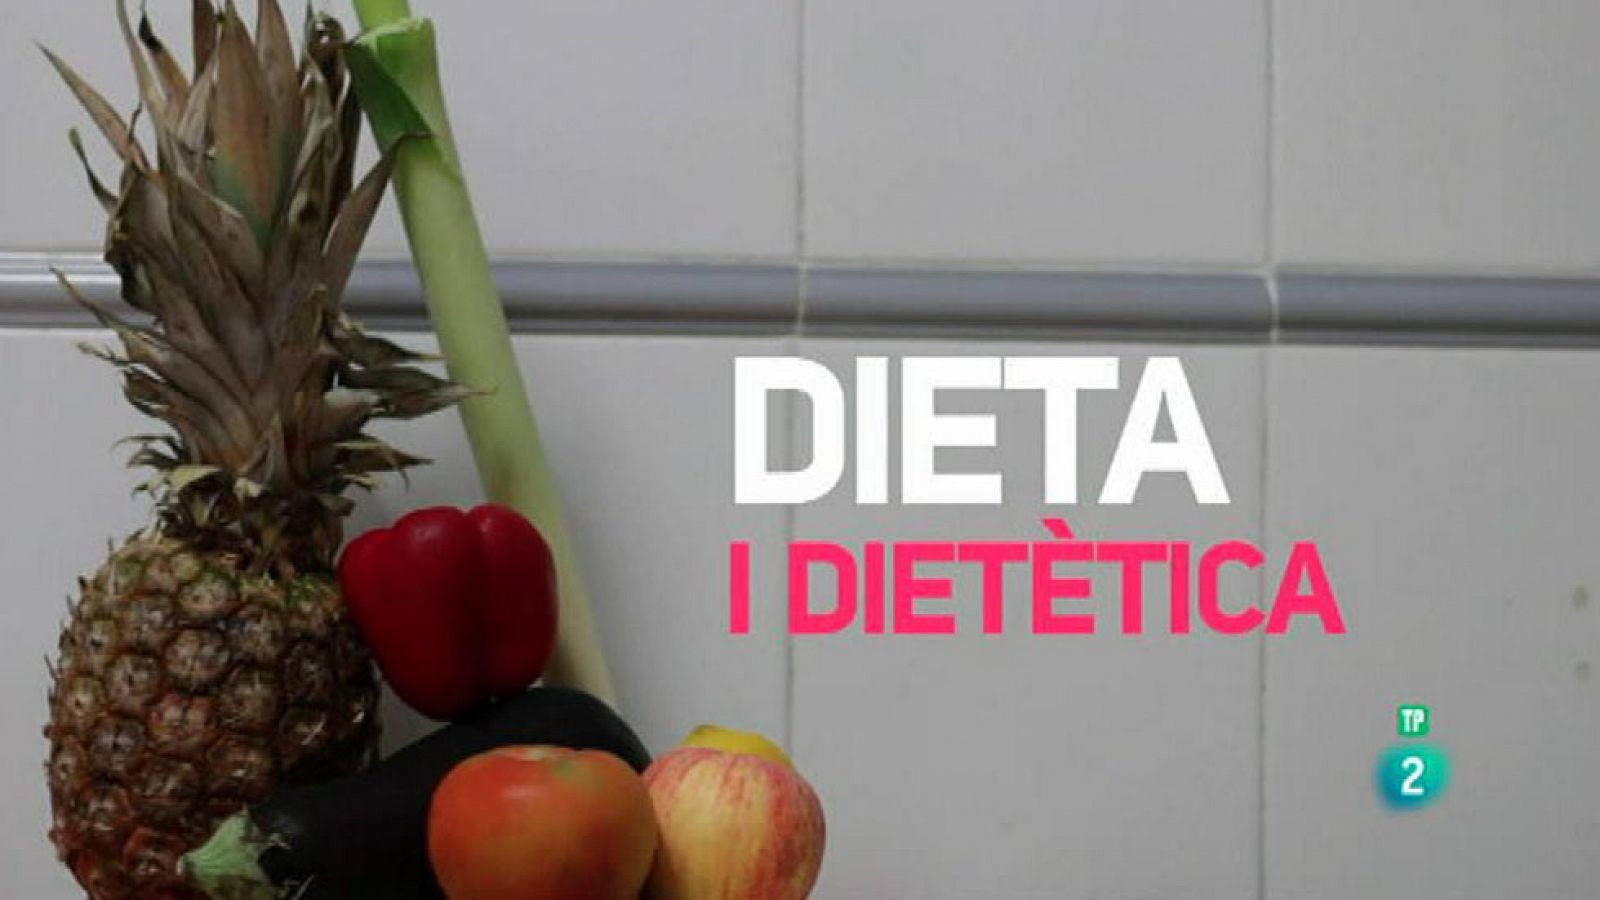 Amb Identitat - Alimentació saludable, complements dietètics